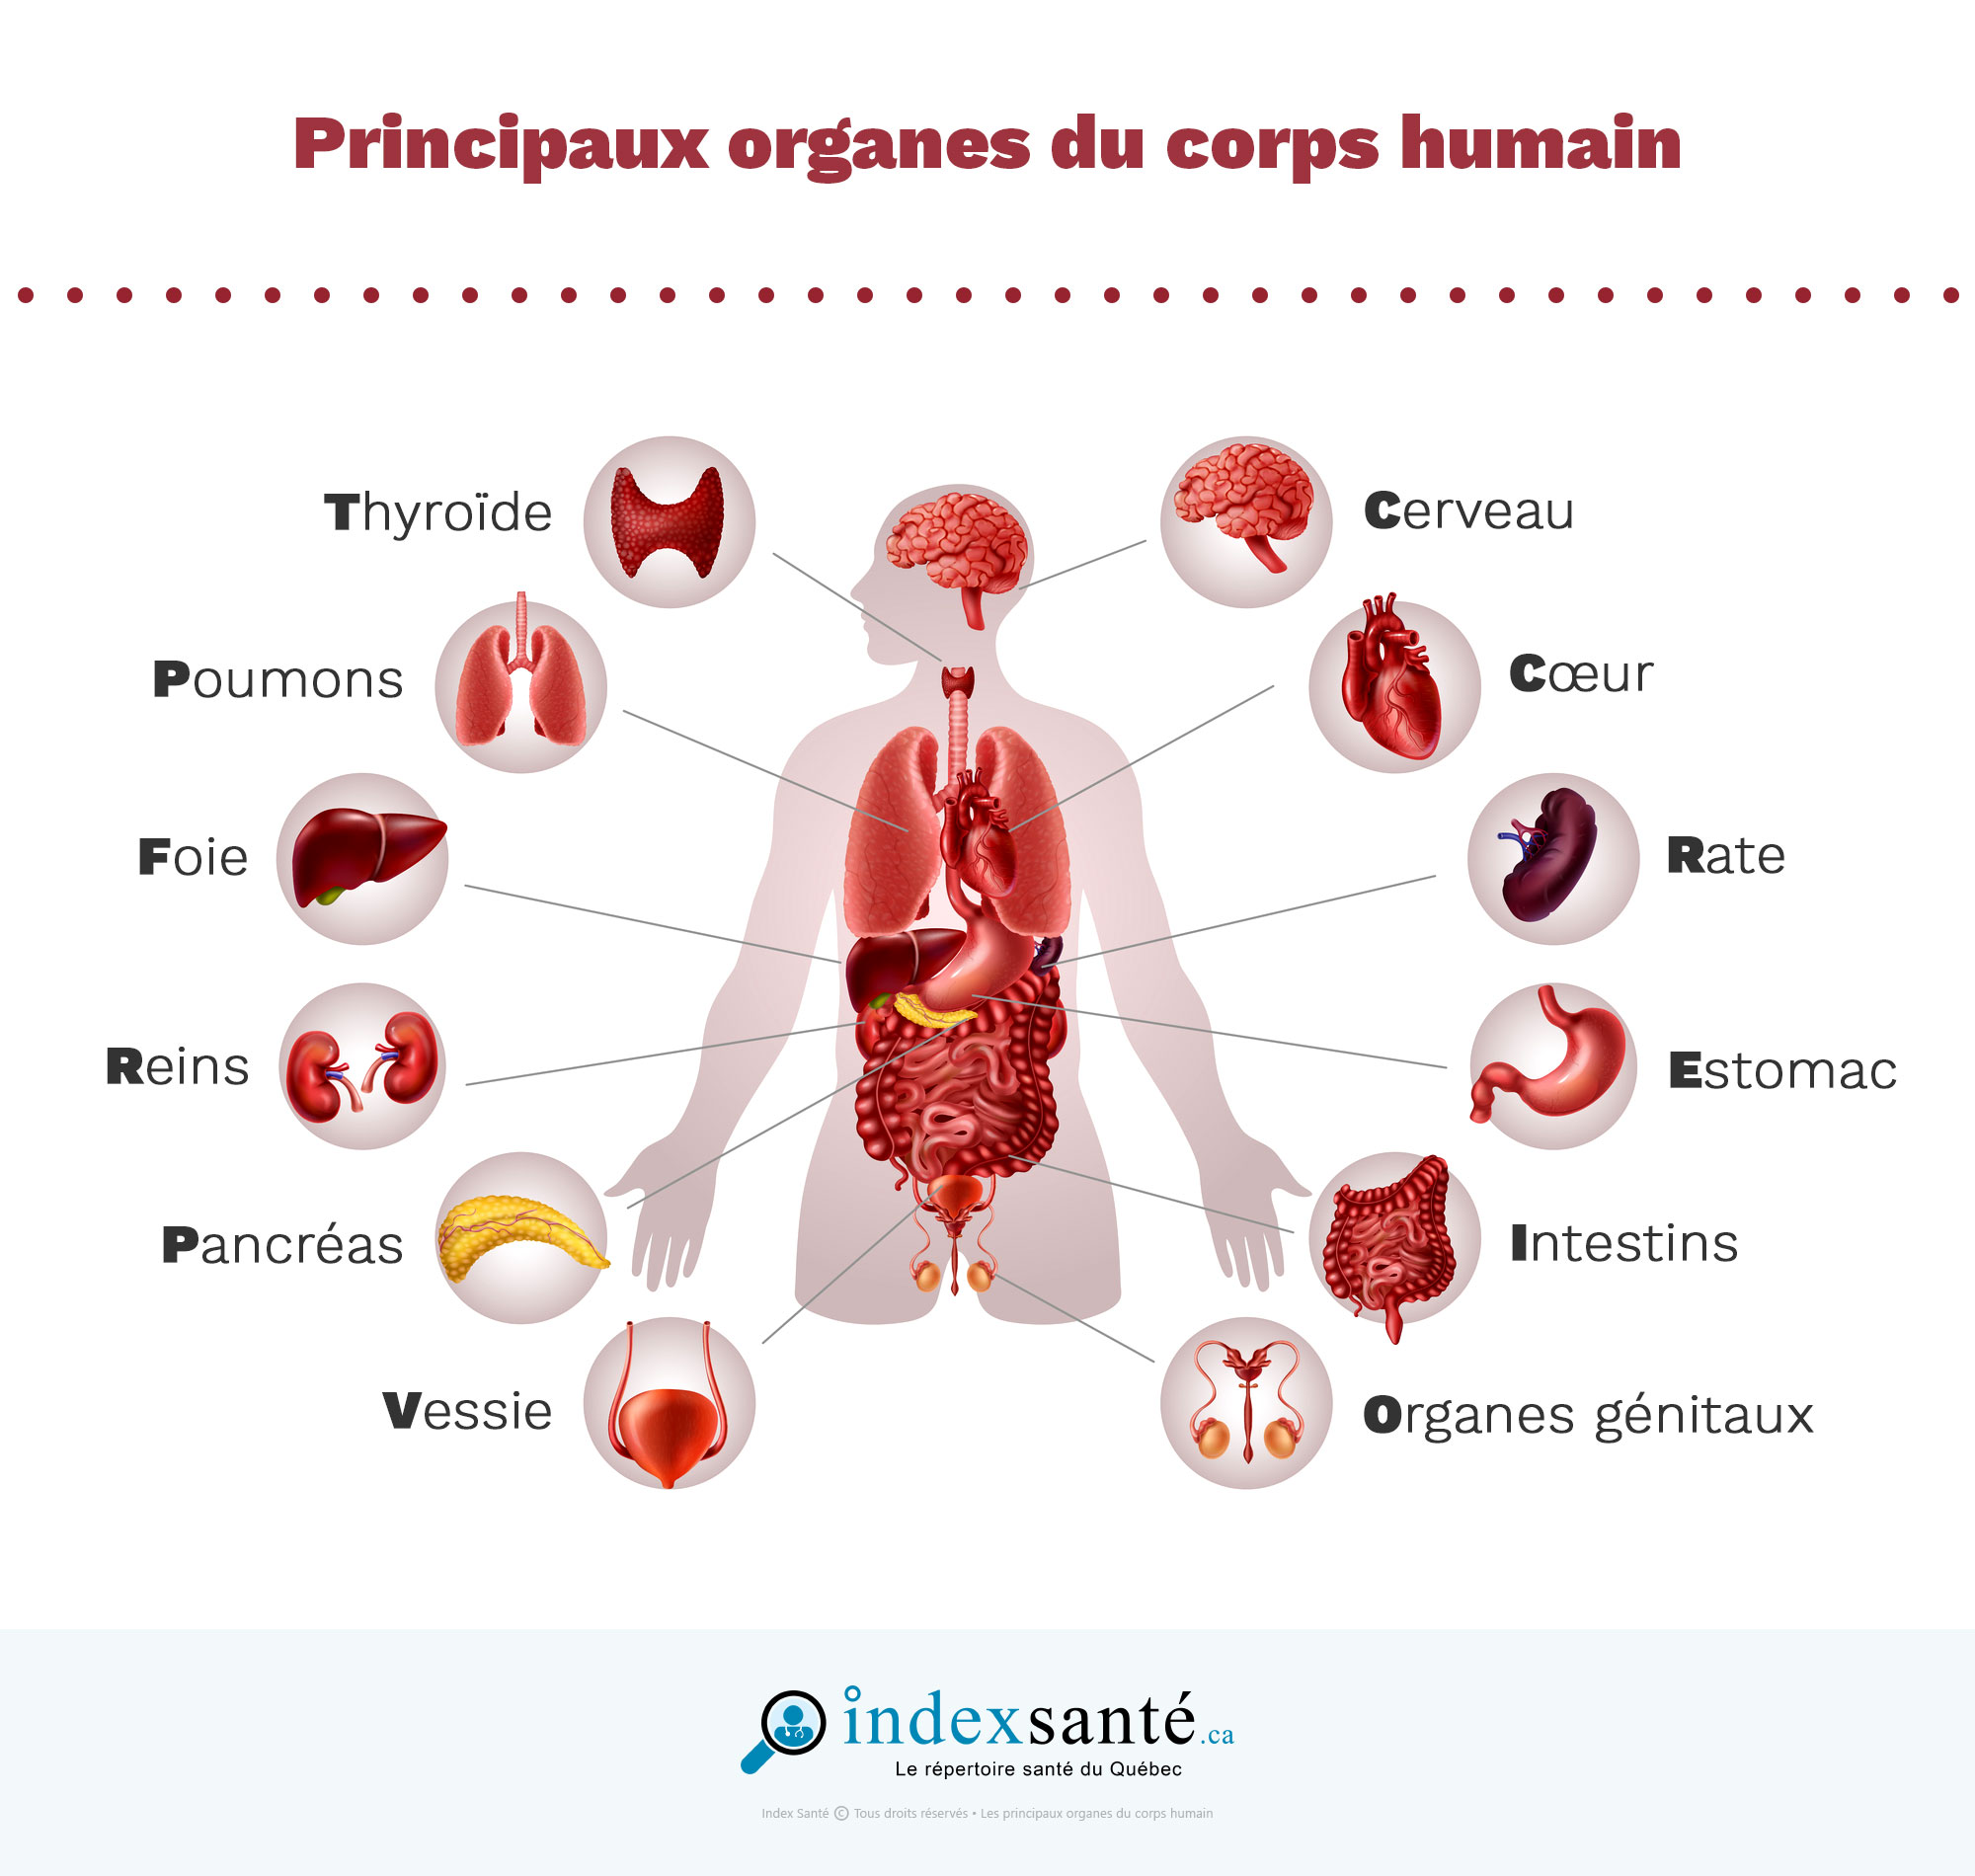 Principaux organes du corps humain